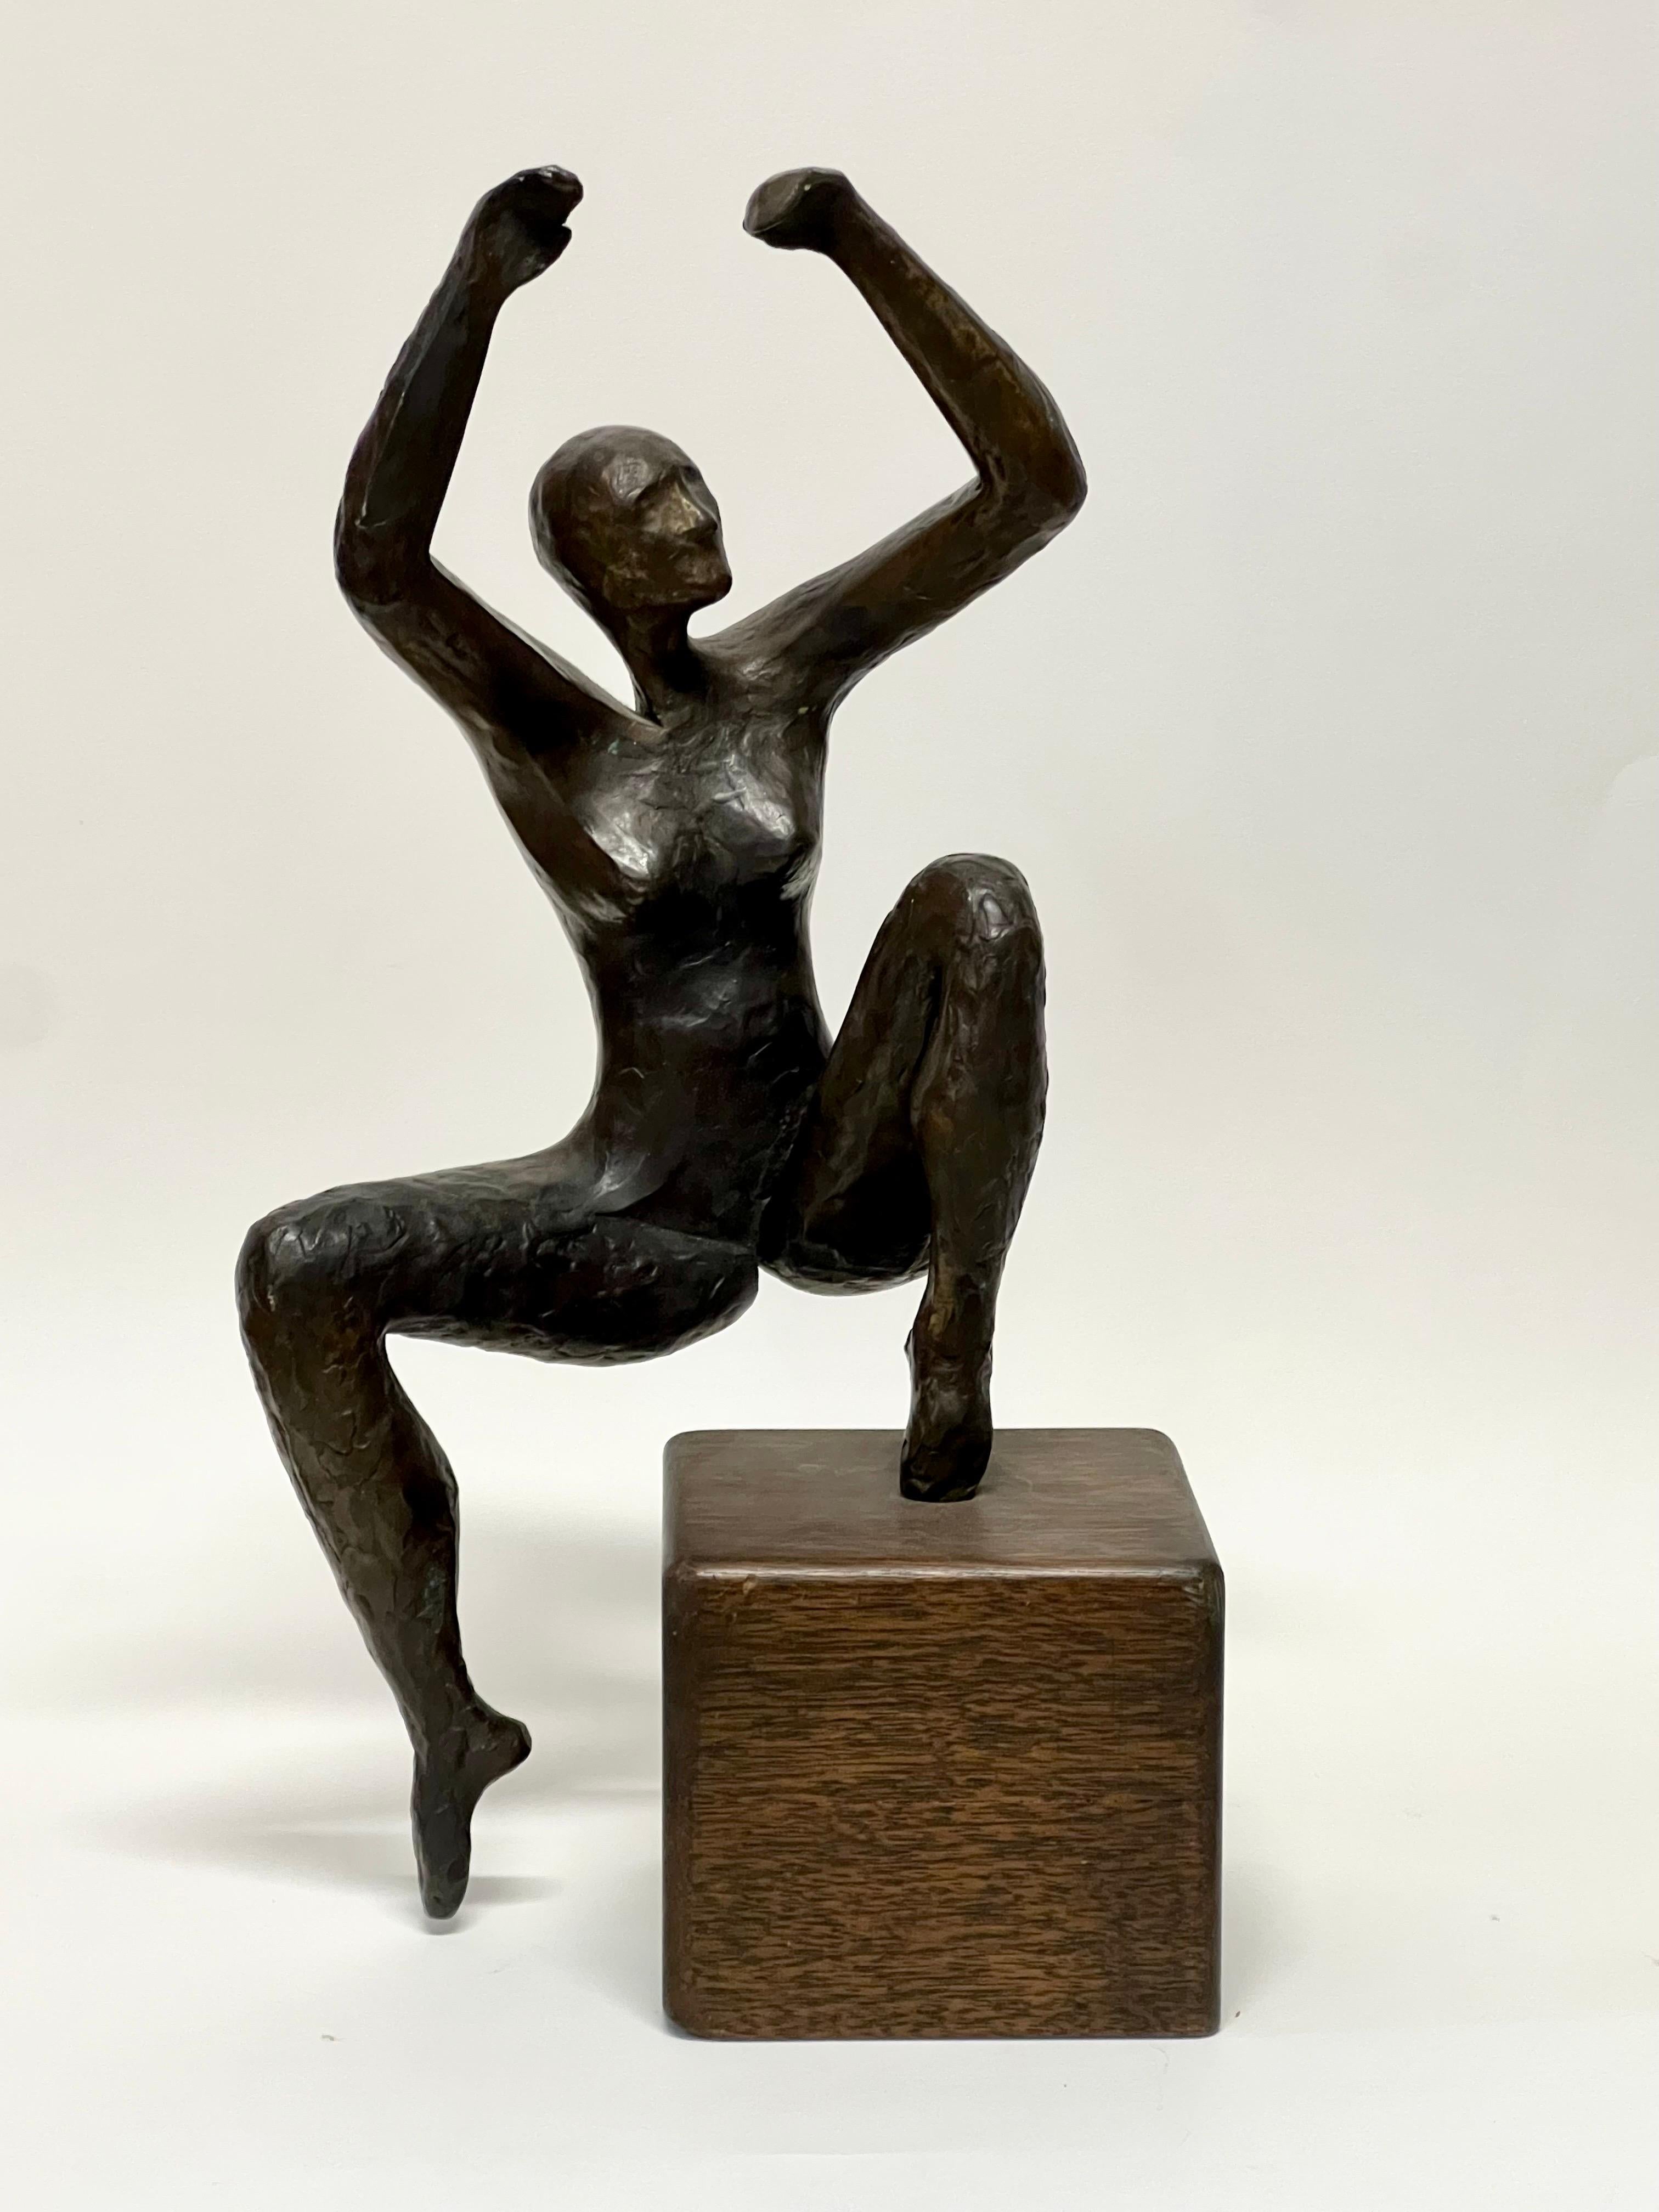 Superbe sculpture abstraite moderniste en bronze coulé représentant une femme fugitive, délicatement posée en équilibre sur une base cubique en bois. Des caractéristiques modernes étonnantes, certainement réalisées par un artiste très compétent. La